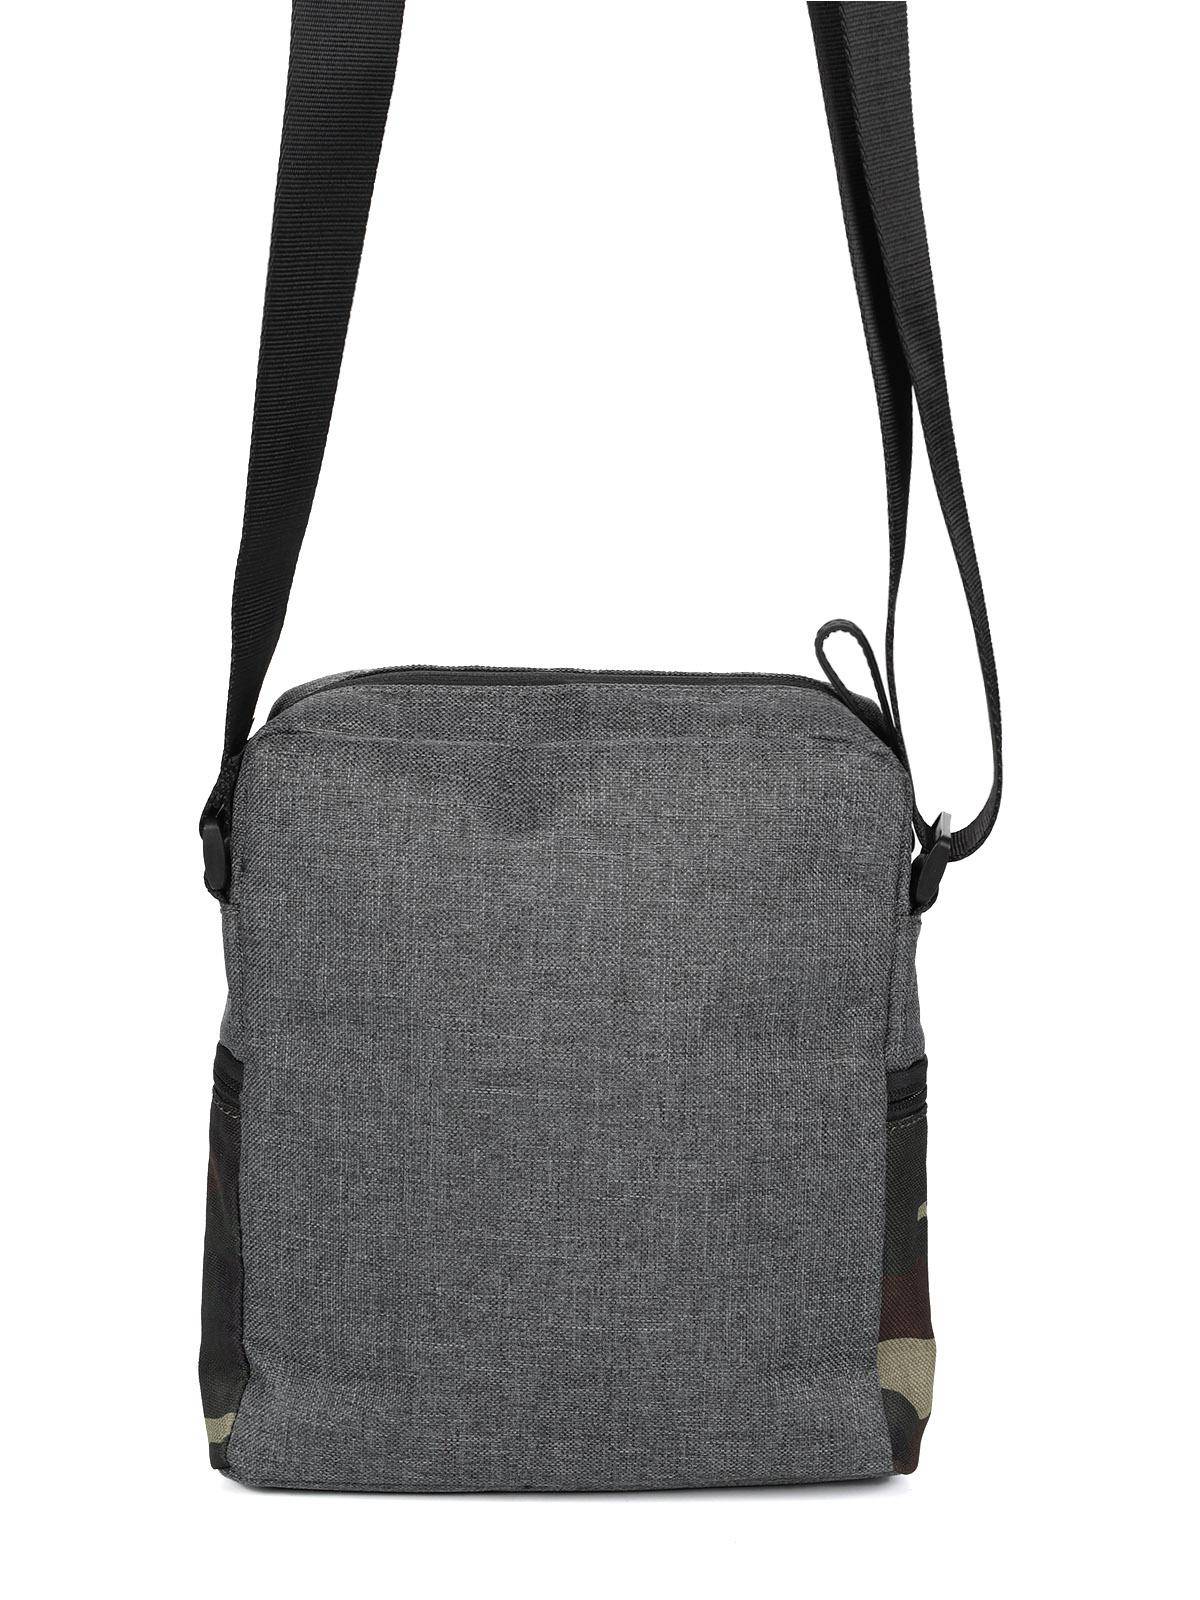 Городская сумка Strellson Bags Swiss cross 2 shoulderbag xsvz 4010002437, цвет серый, размер ONE SIZE - фото 4